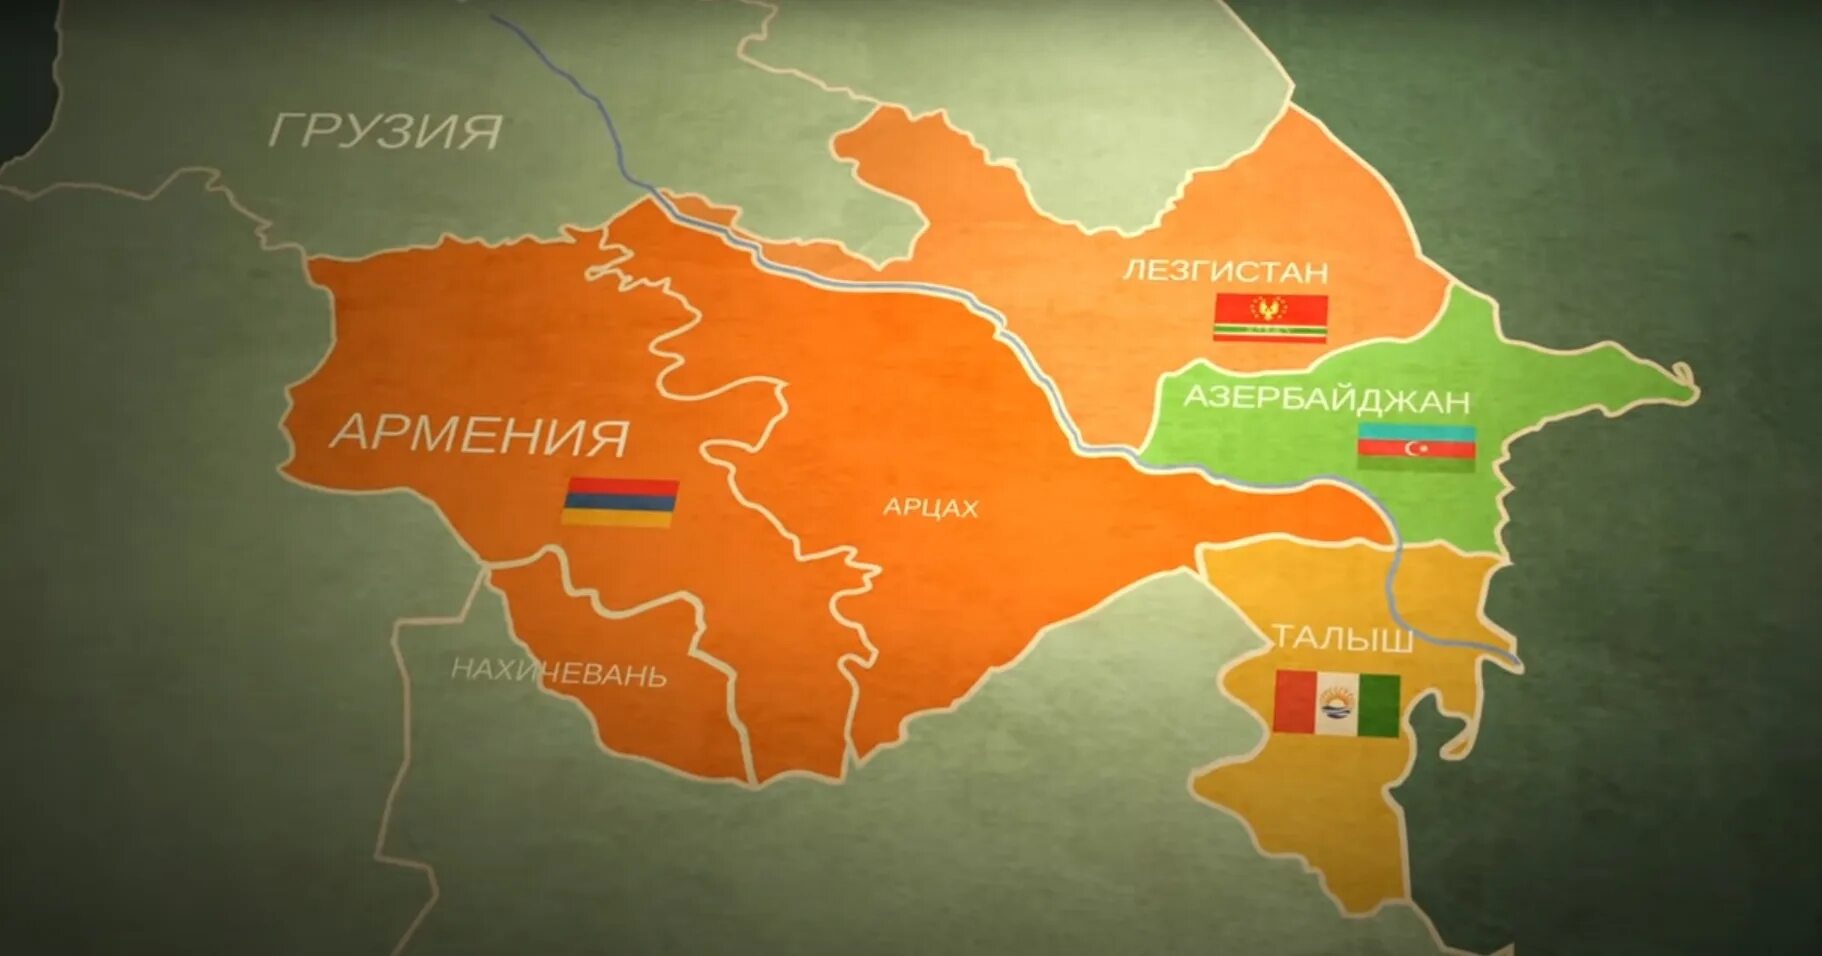 Работает ли мир в азербайджане. Арцах Нагорный Карабах карта. Территория Армении с Арцахом. Территория талышей в Азербайджане. Азербайджан на карте.